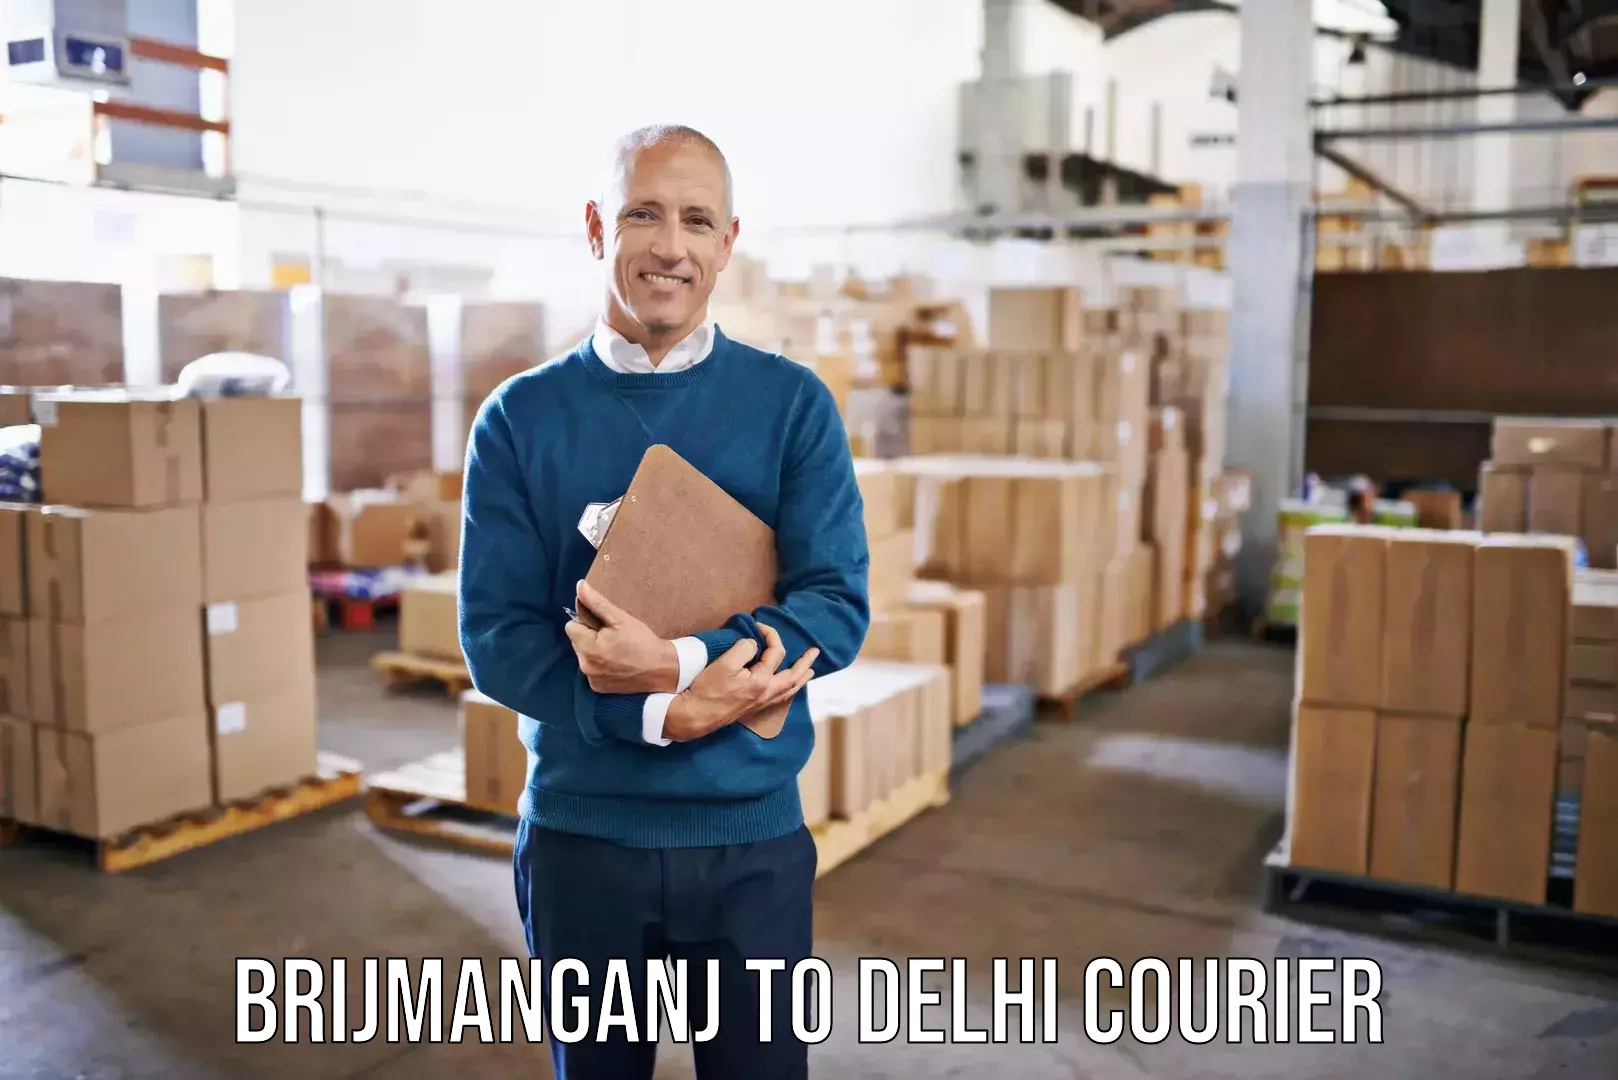 Furniture moving experts Brijmanganj to Delhi